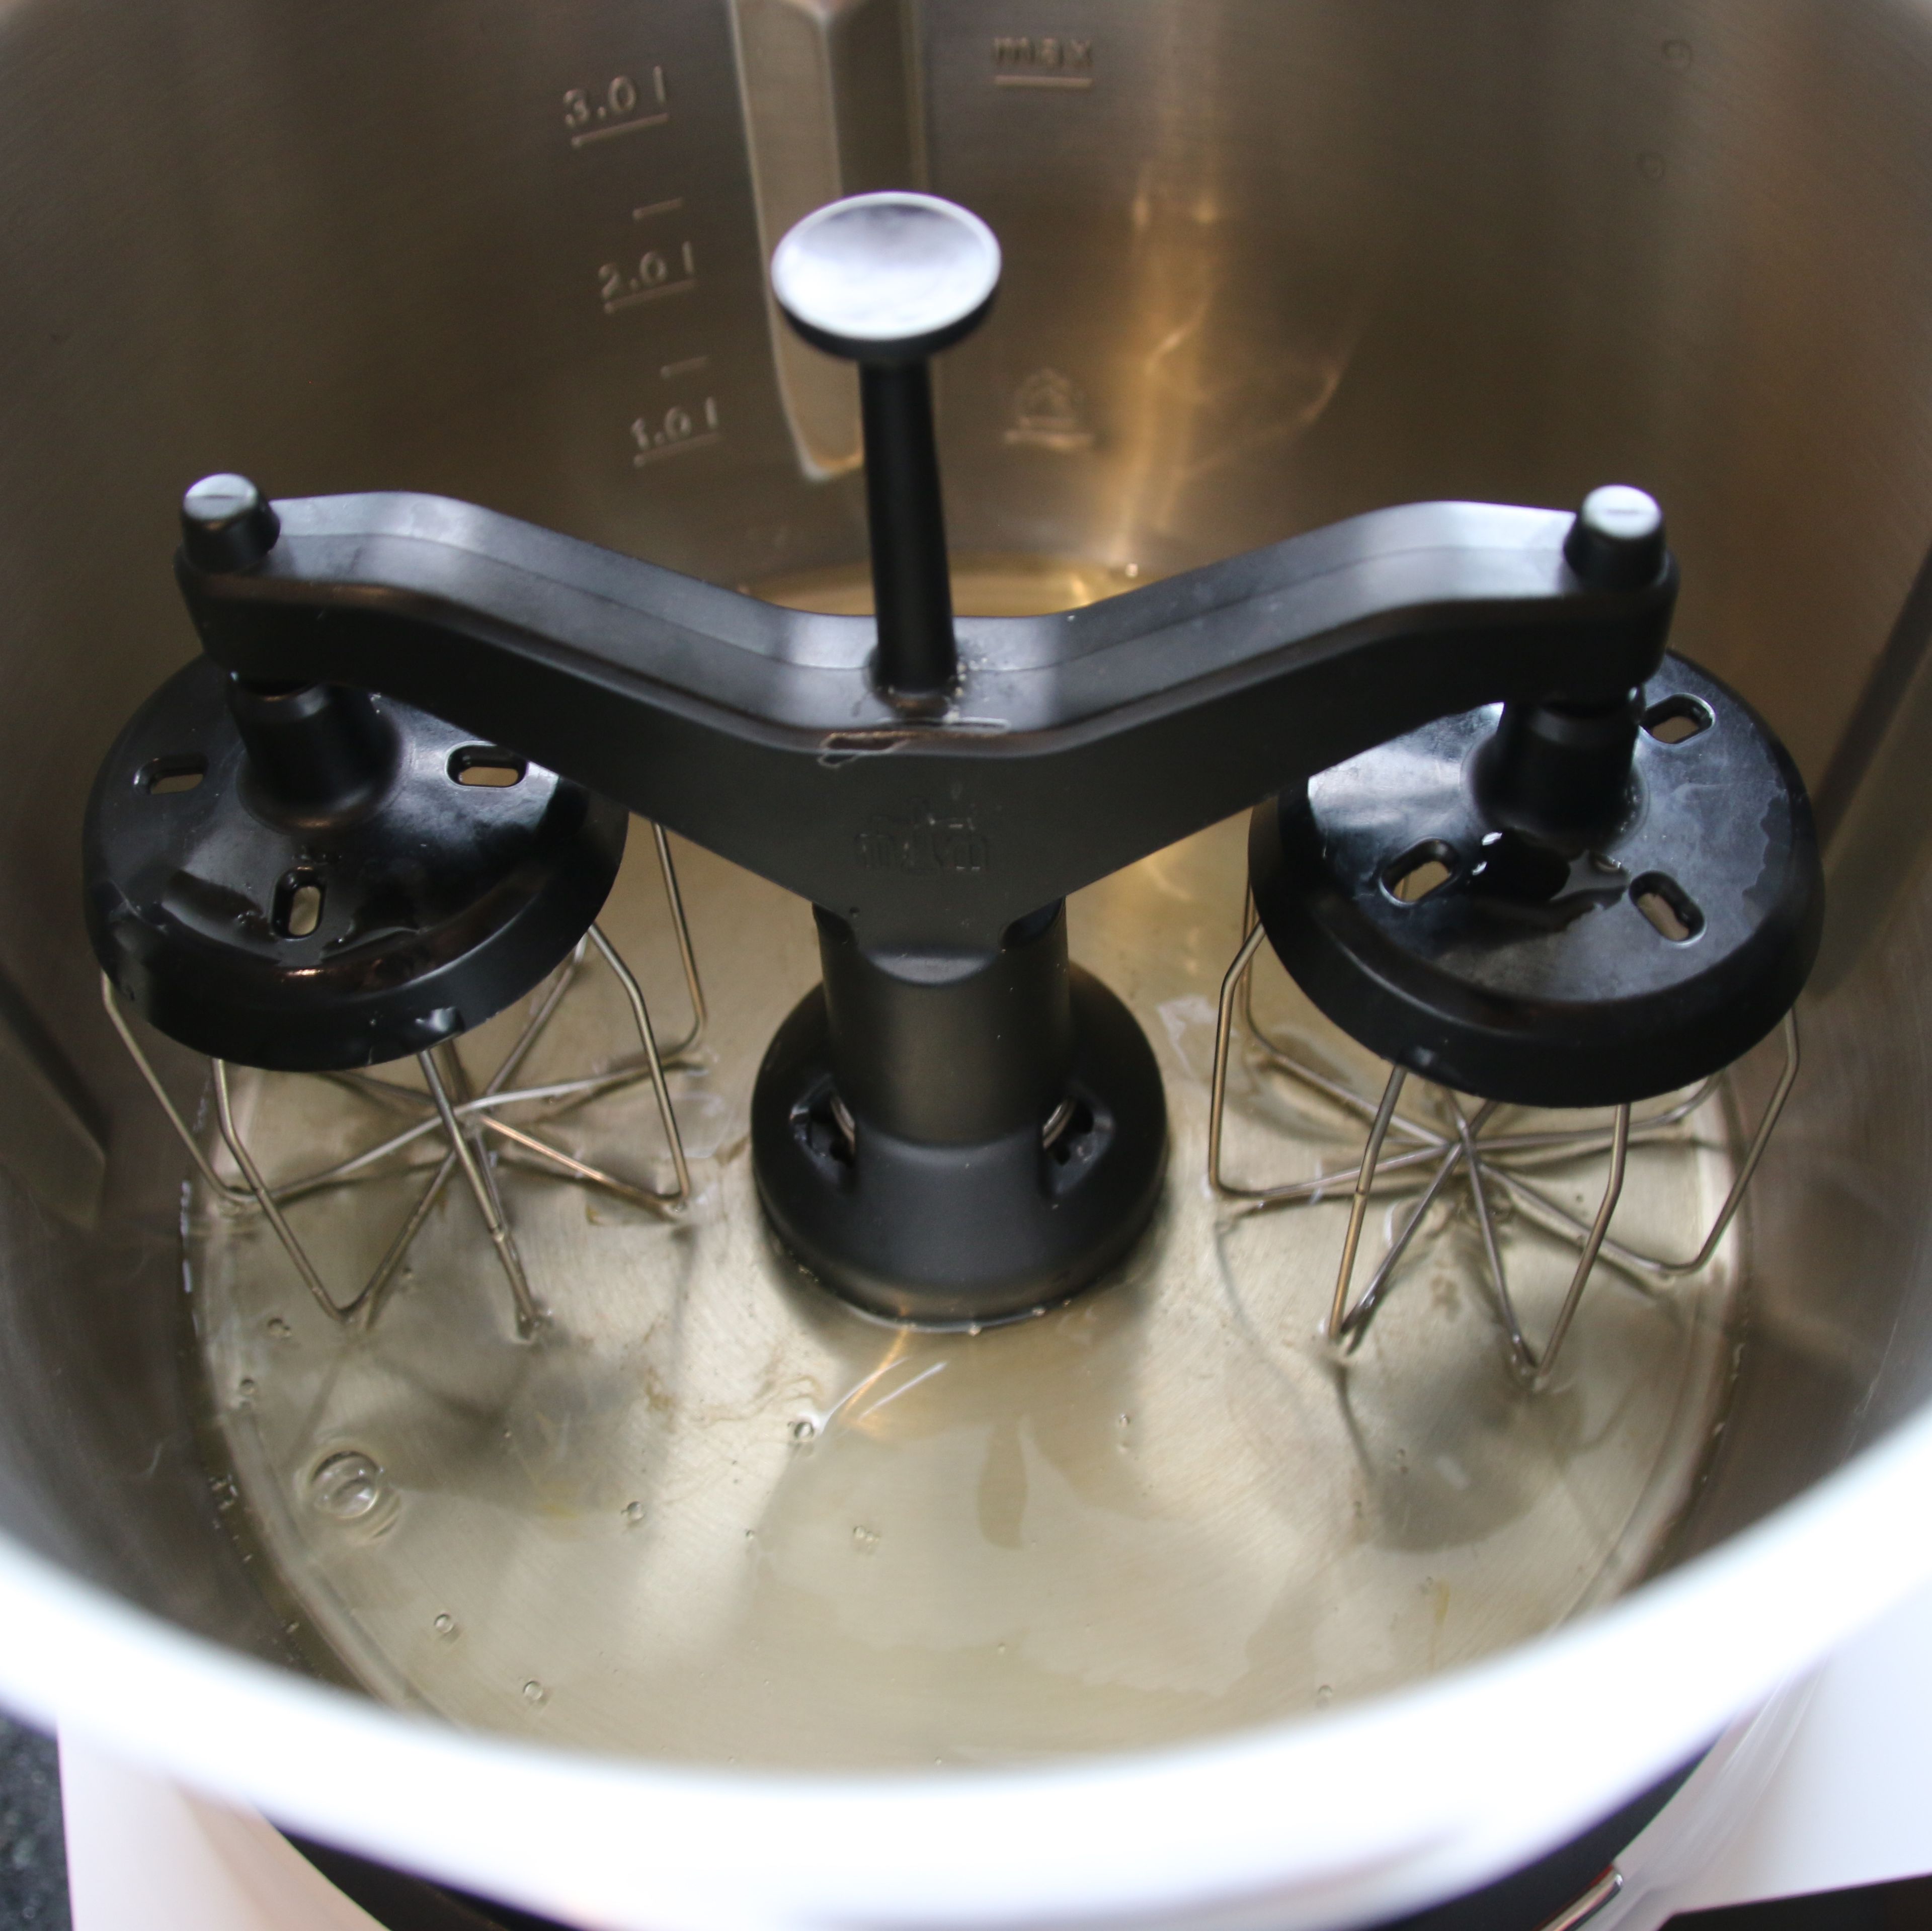 Backofen auf 160° Umluft vorheizen. Zucker in ein separates Gefäß abwiegen. Mehl in ein zweites Gefäß abwiegen. Eier trennen, das Eiweiß in den XL-Topf geben.